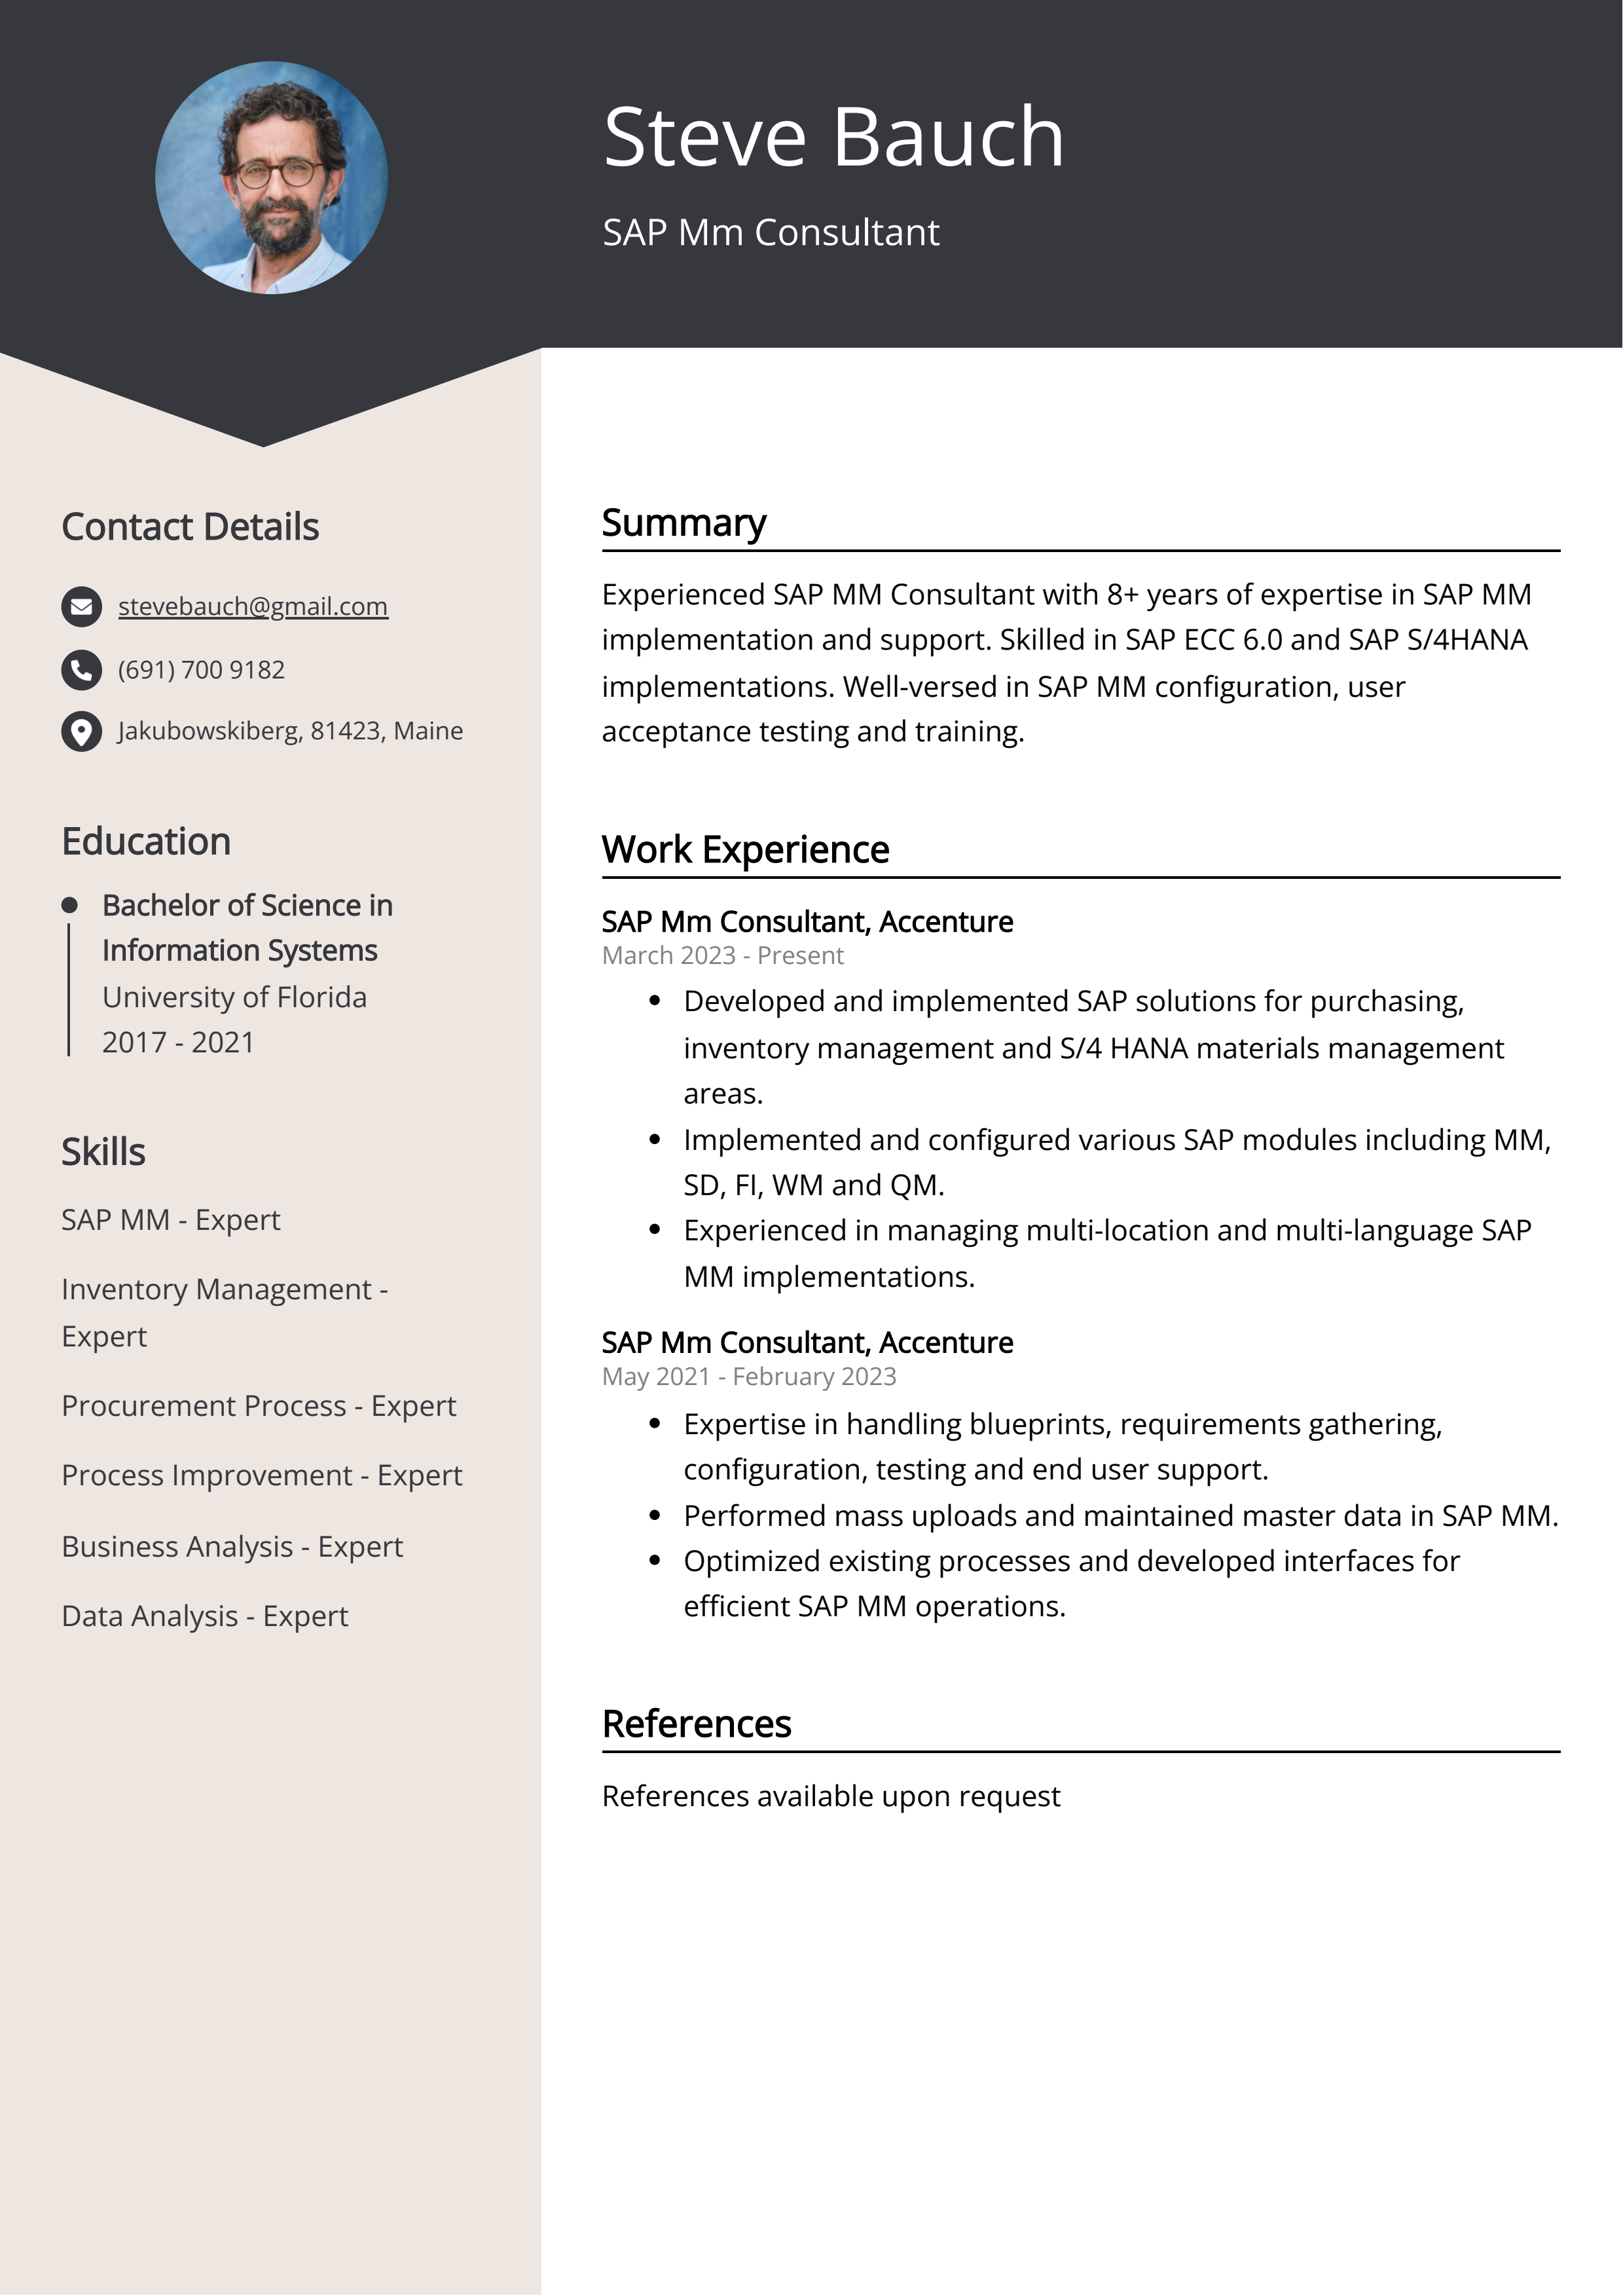 SAP Mm Consultant CV Example